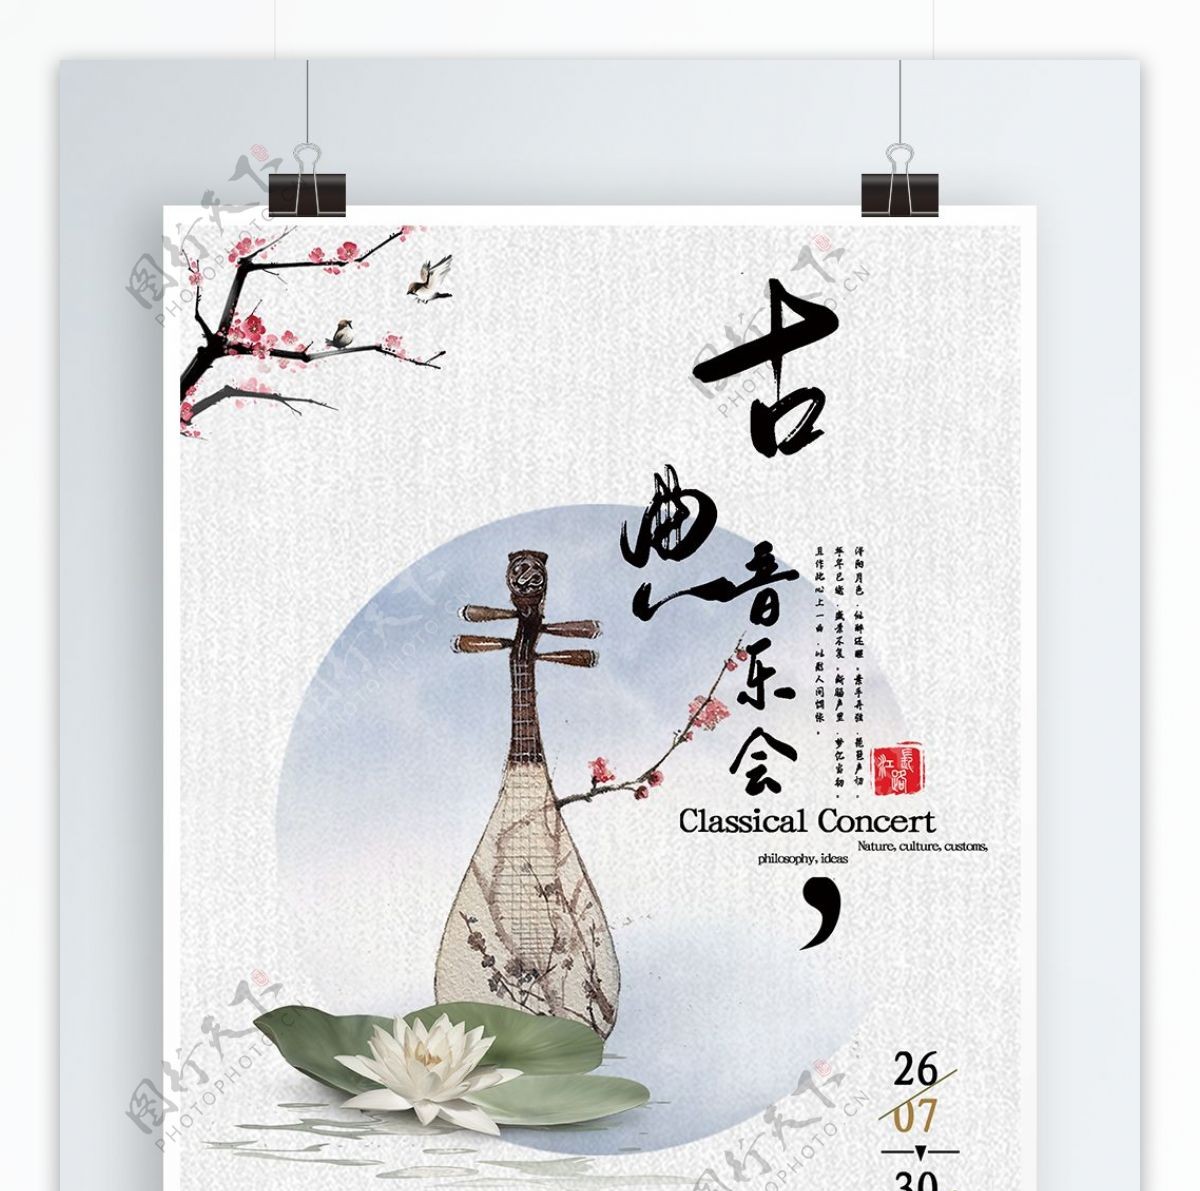 中国风古典音乐会海报